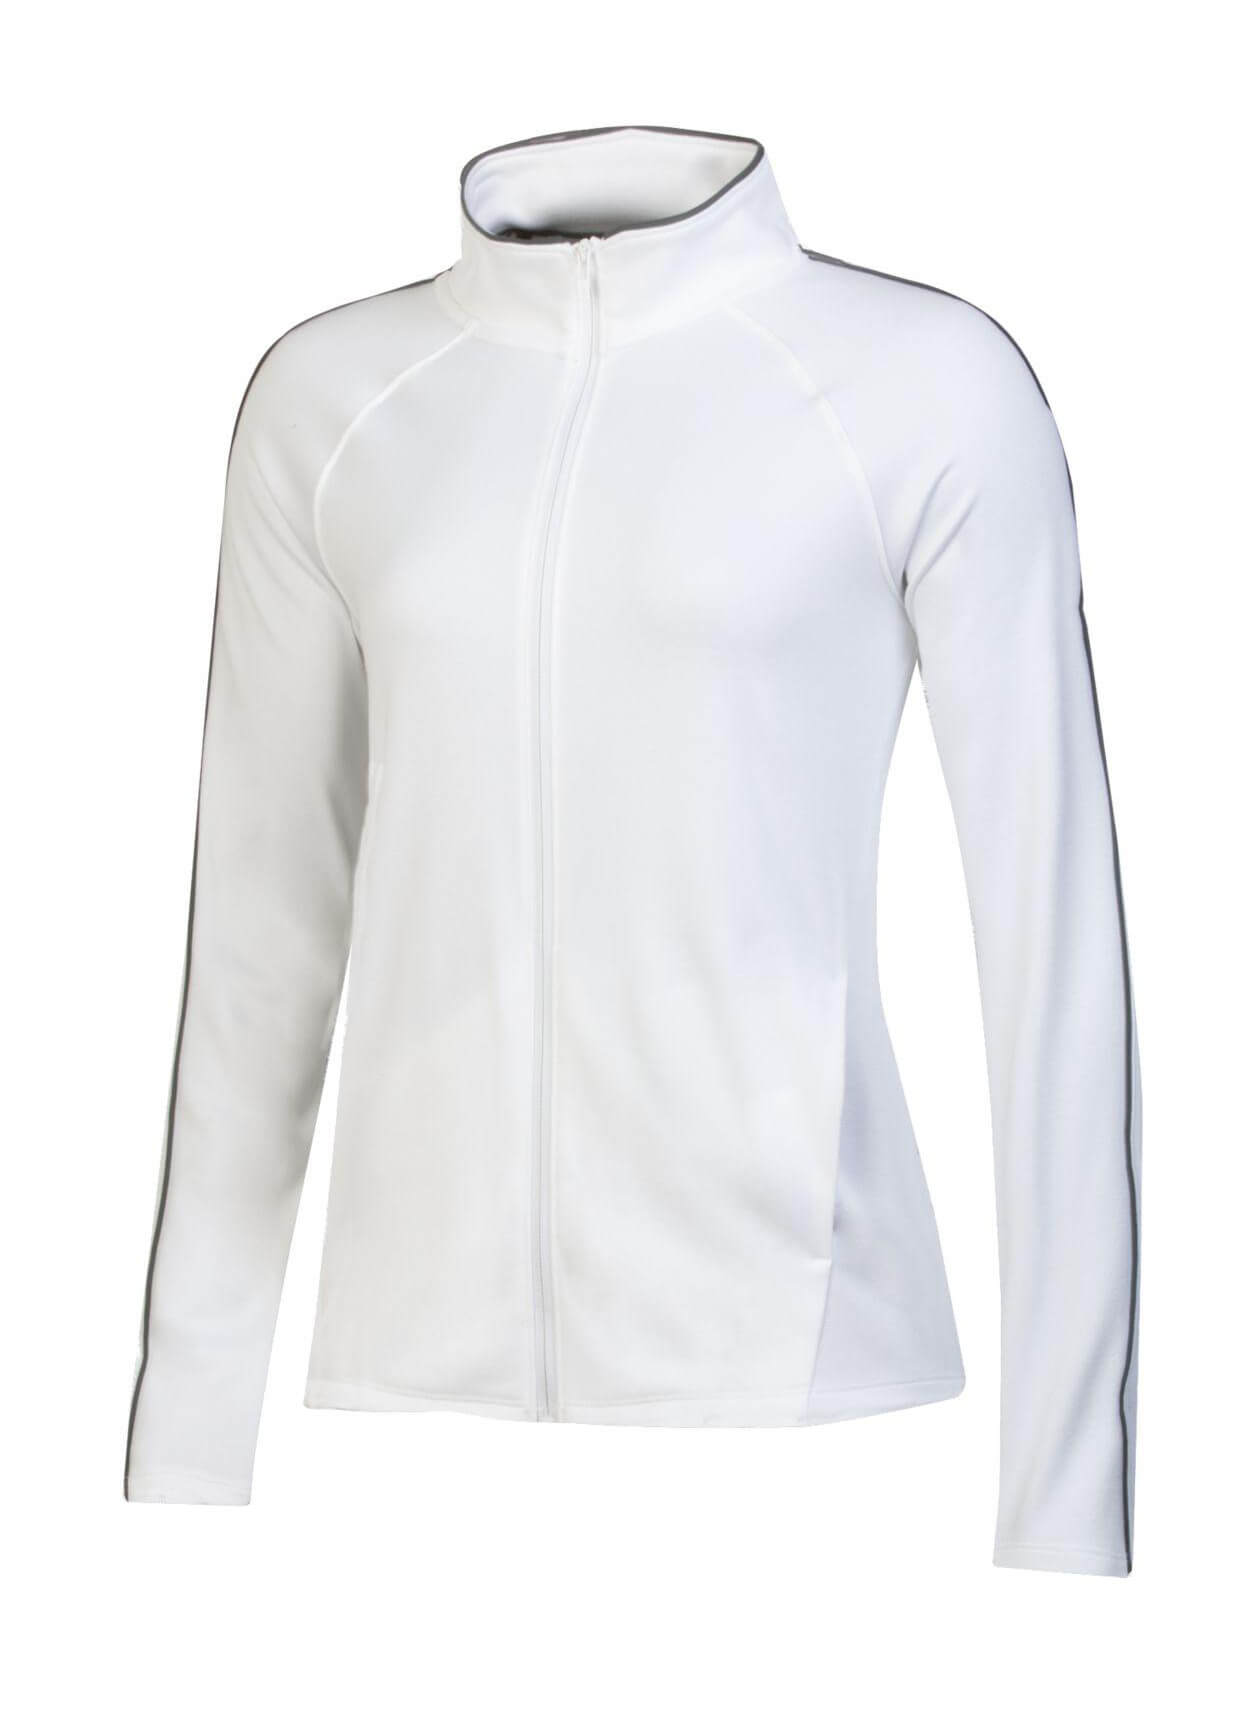 Under Armour UW1426 - Women's Tempo Fleece Jacket